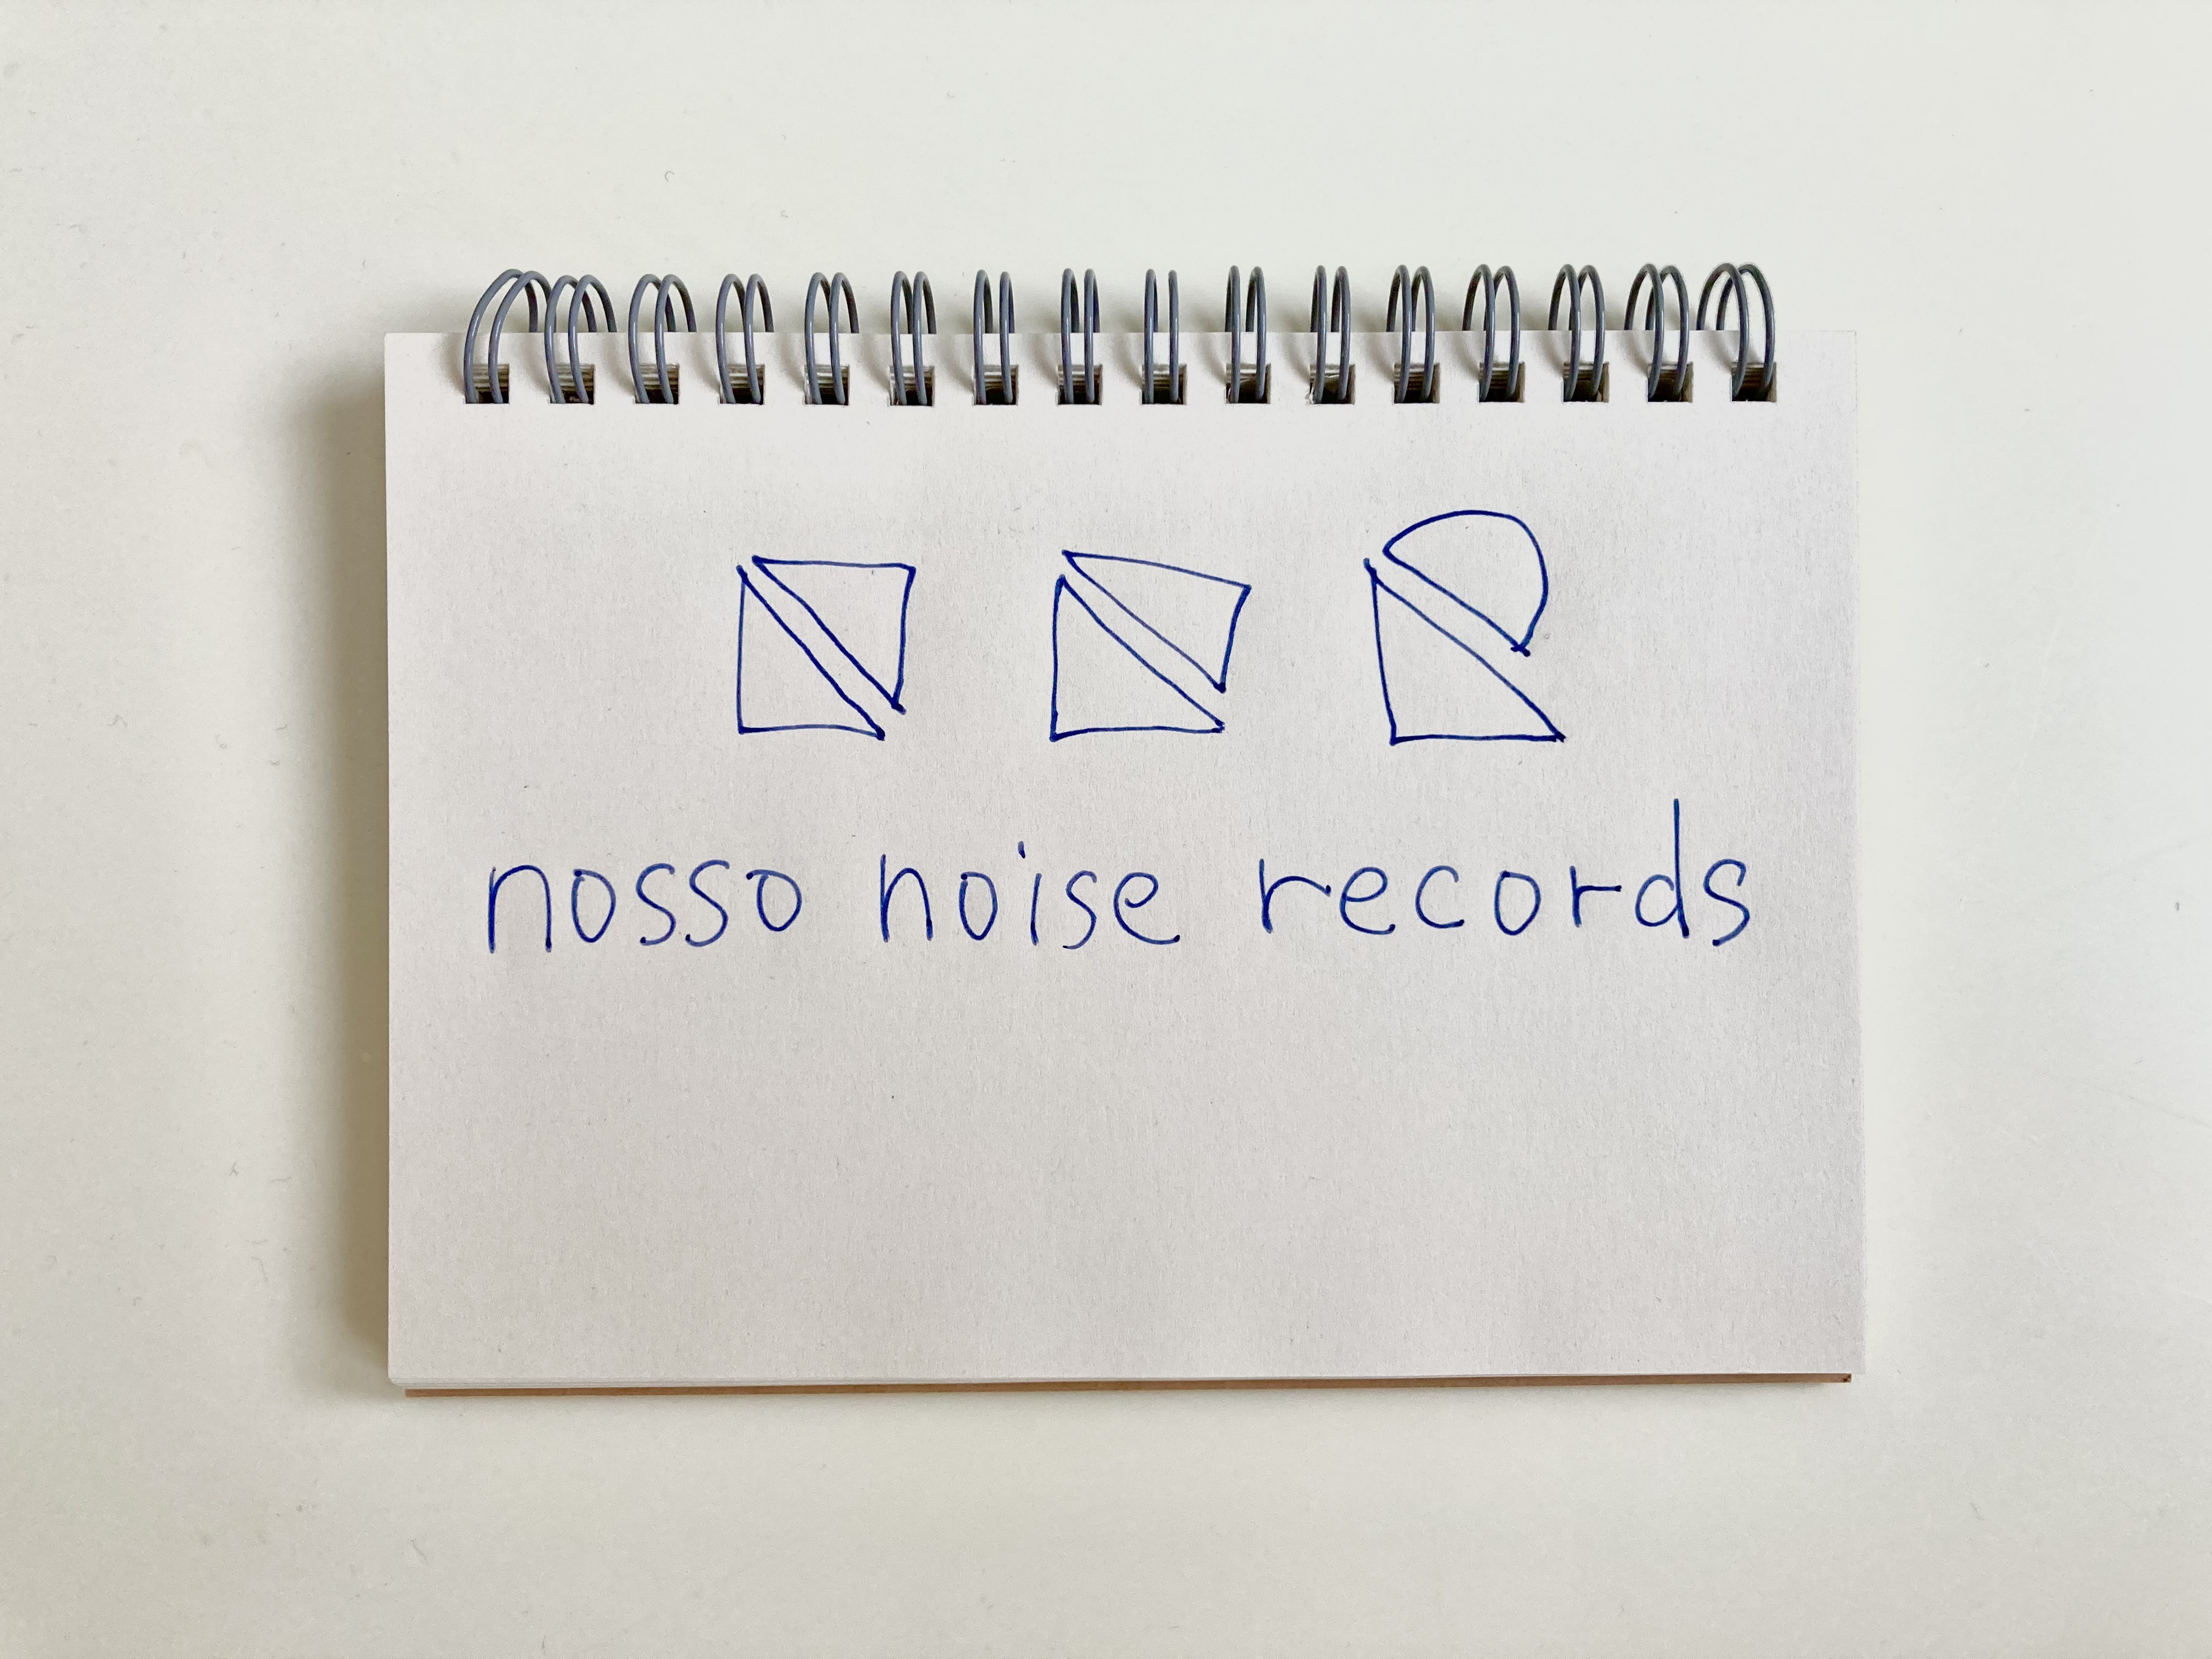 NOSSO NOISE RECORDS　ノッスノイズレコーズ